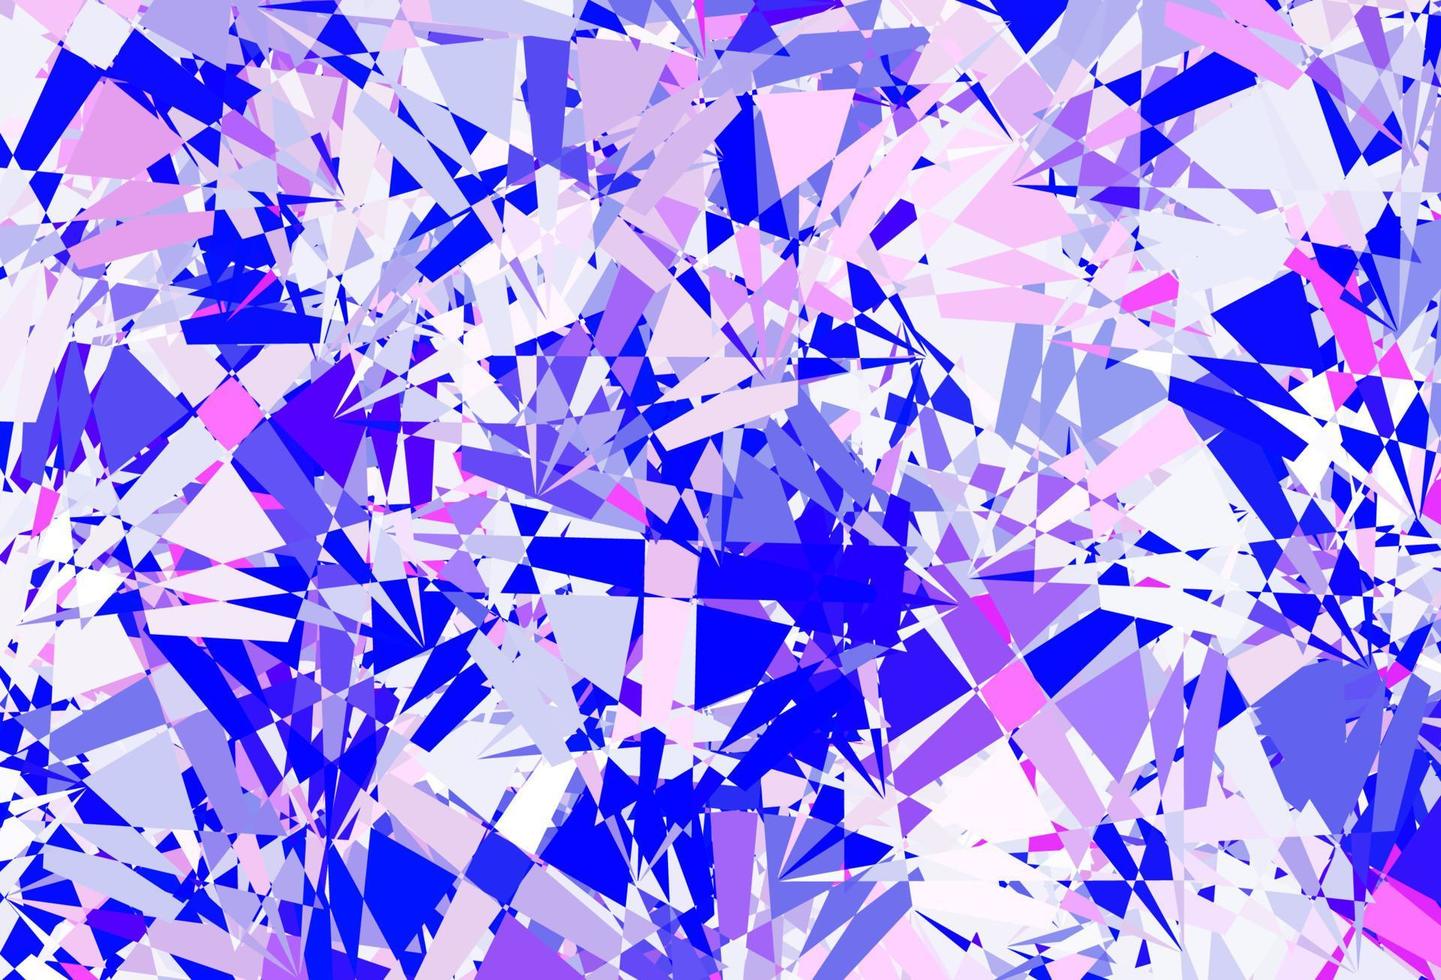 hellrosa, blaues Vektorlayout mit Dreiecksformen. vektor